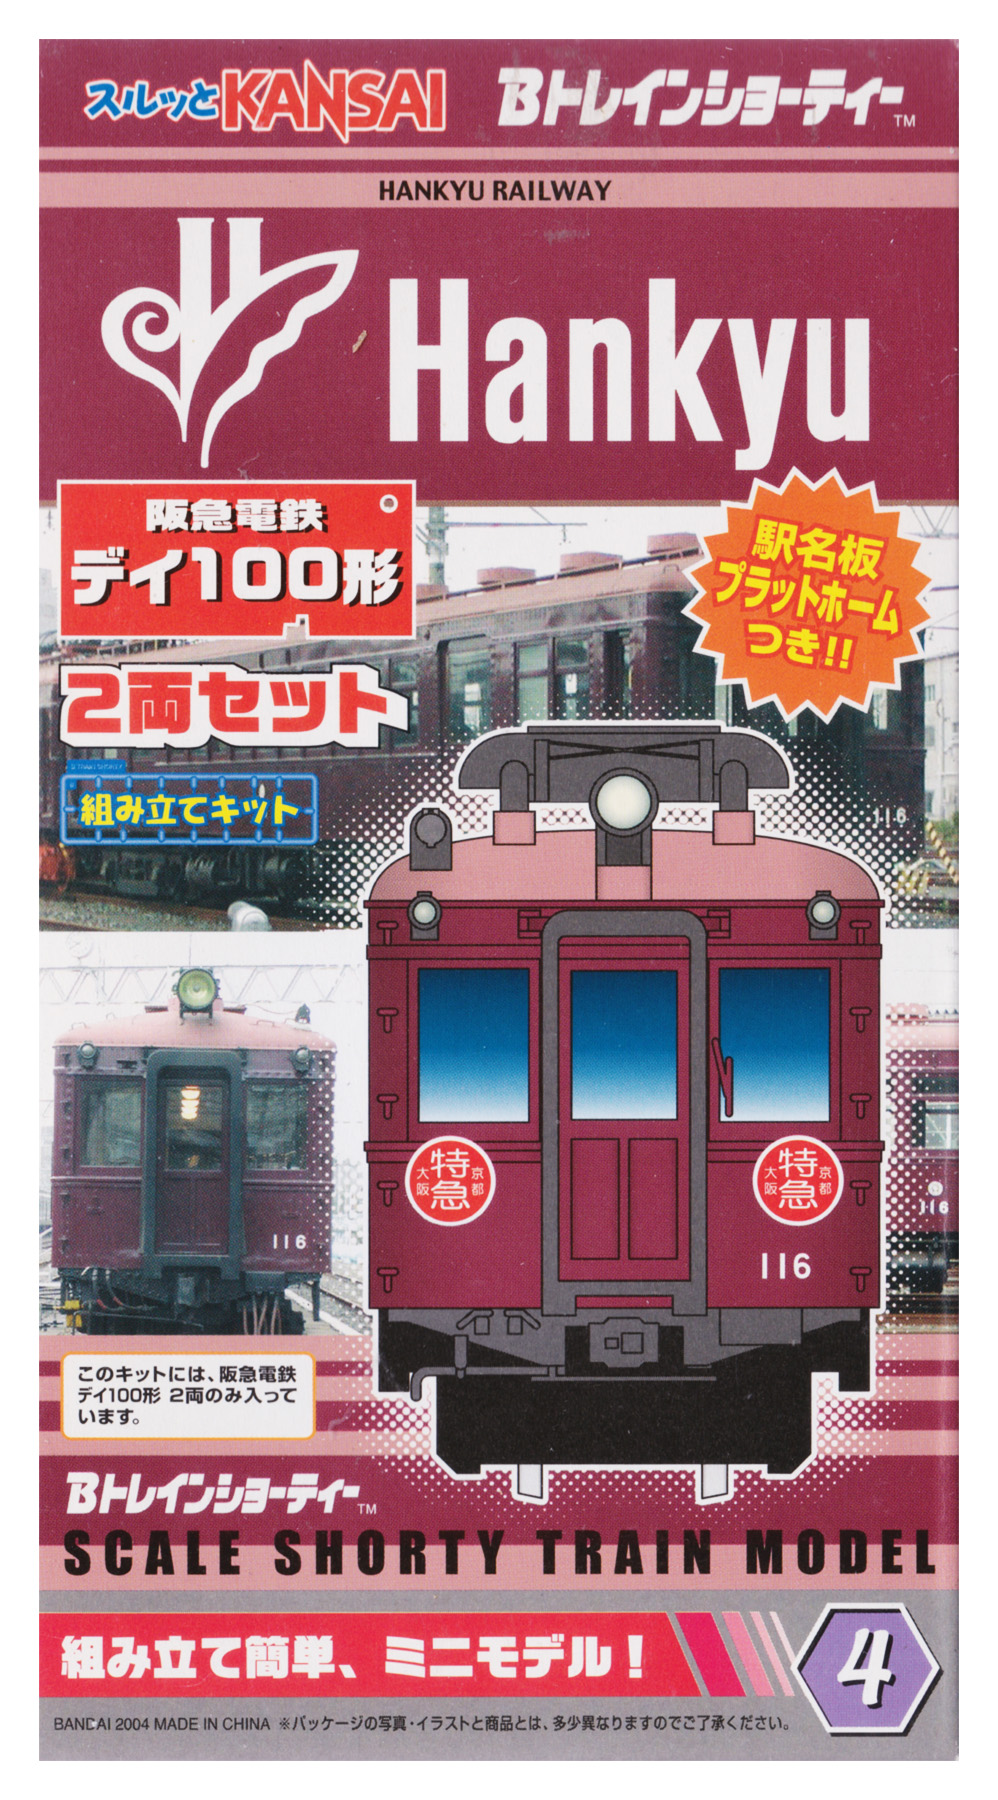 公式]鉄道模型(ジオコレ・Bトレ、Bトレインショーティー、関西・名古屋